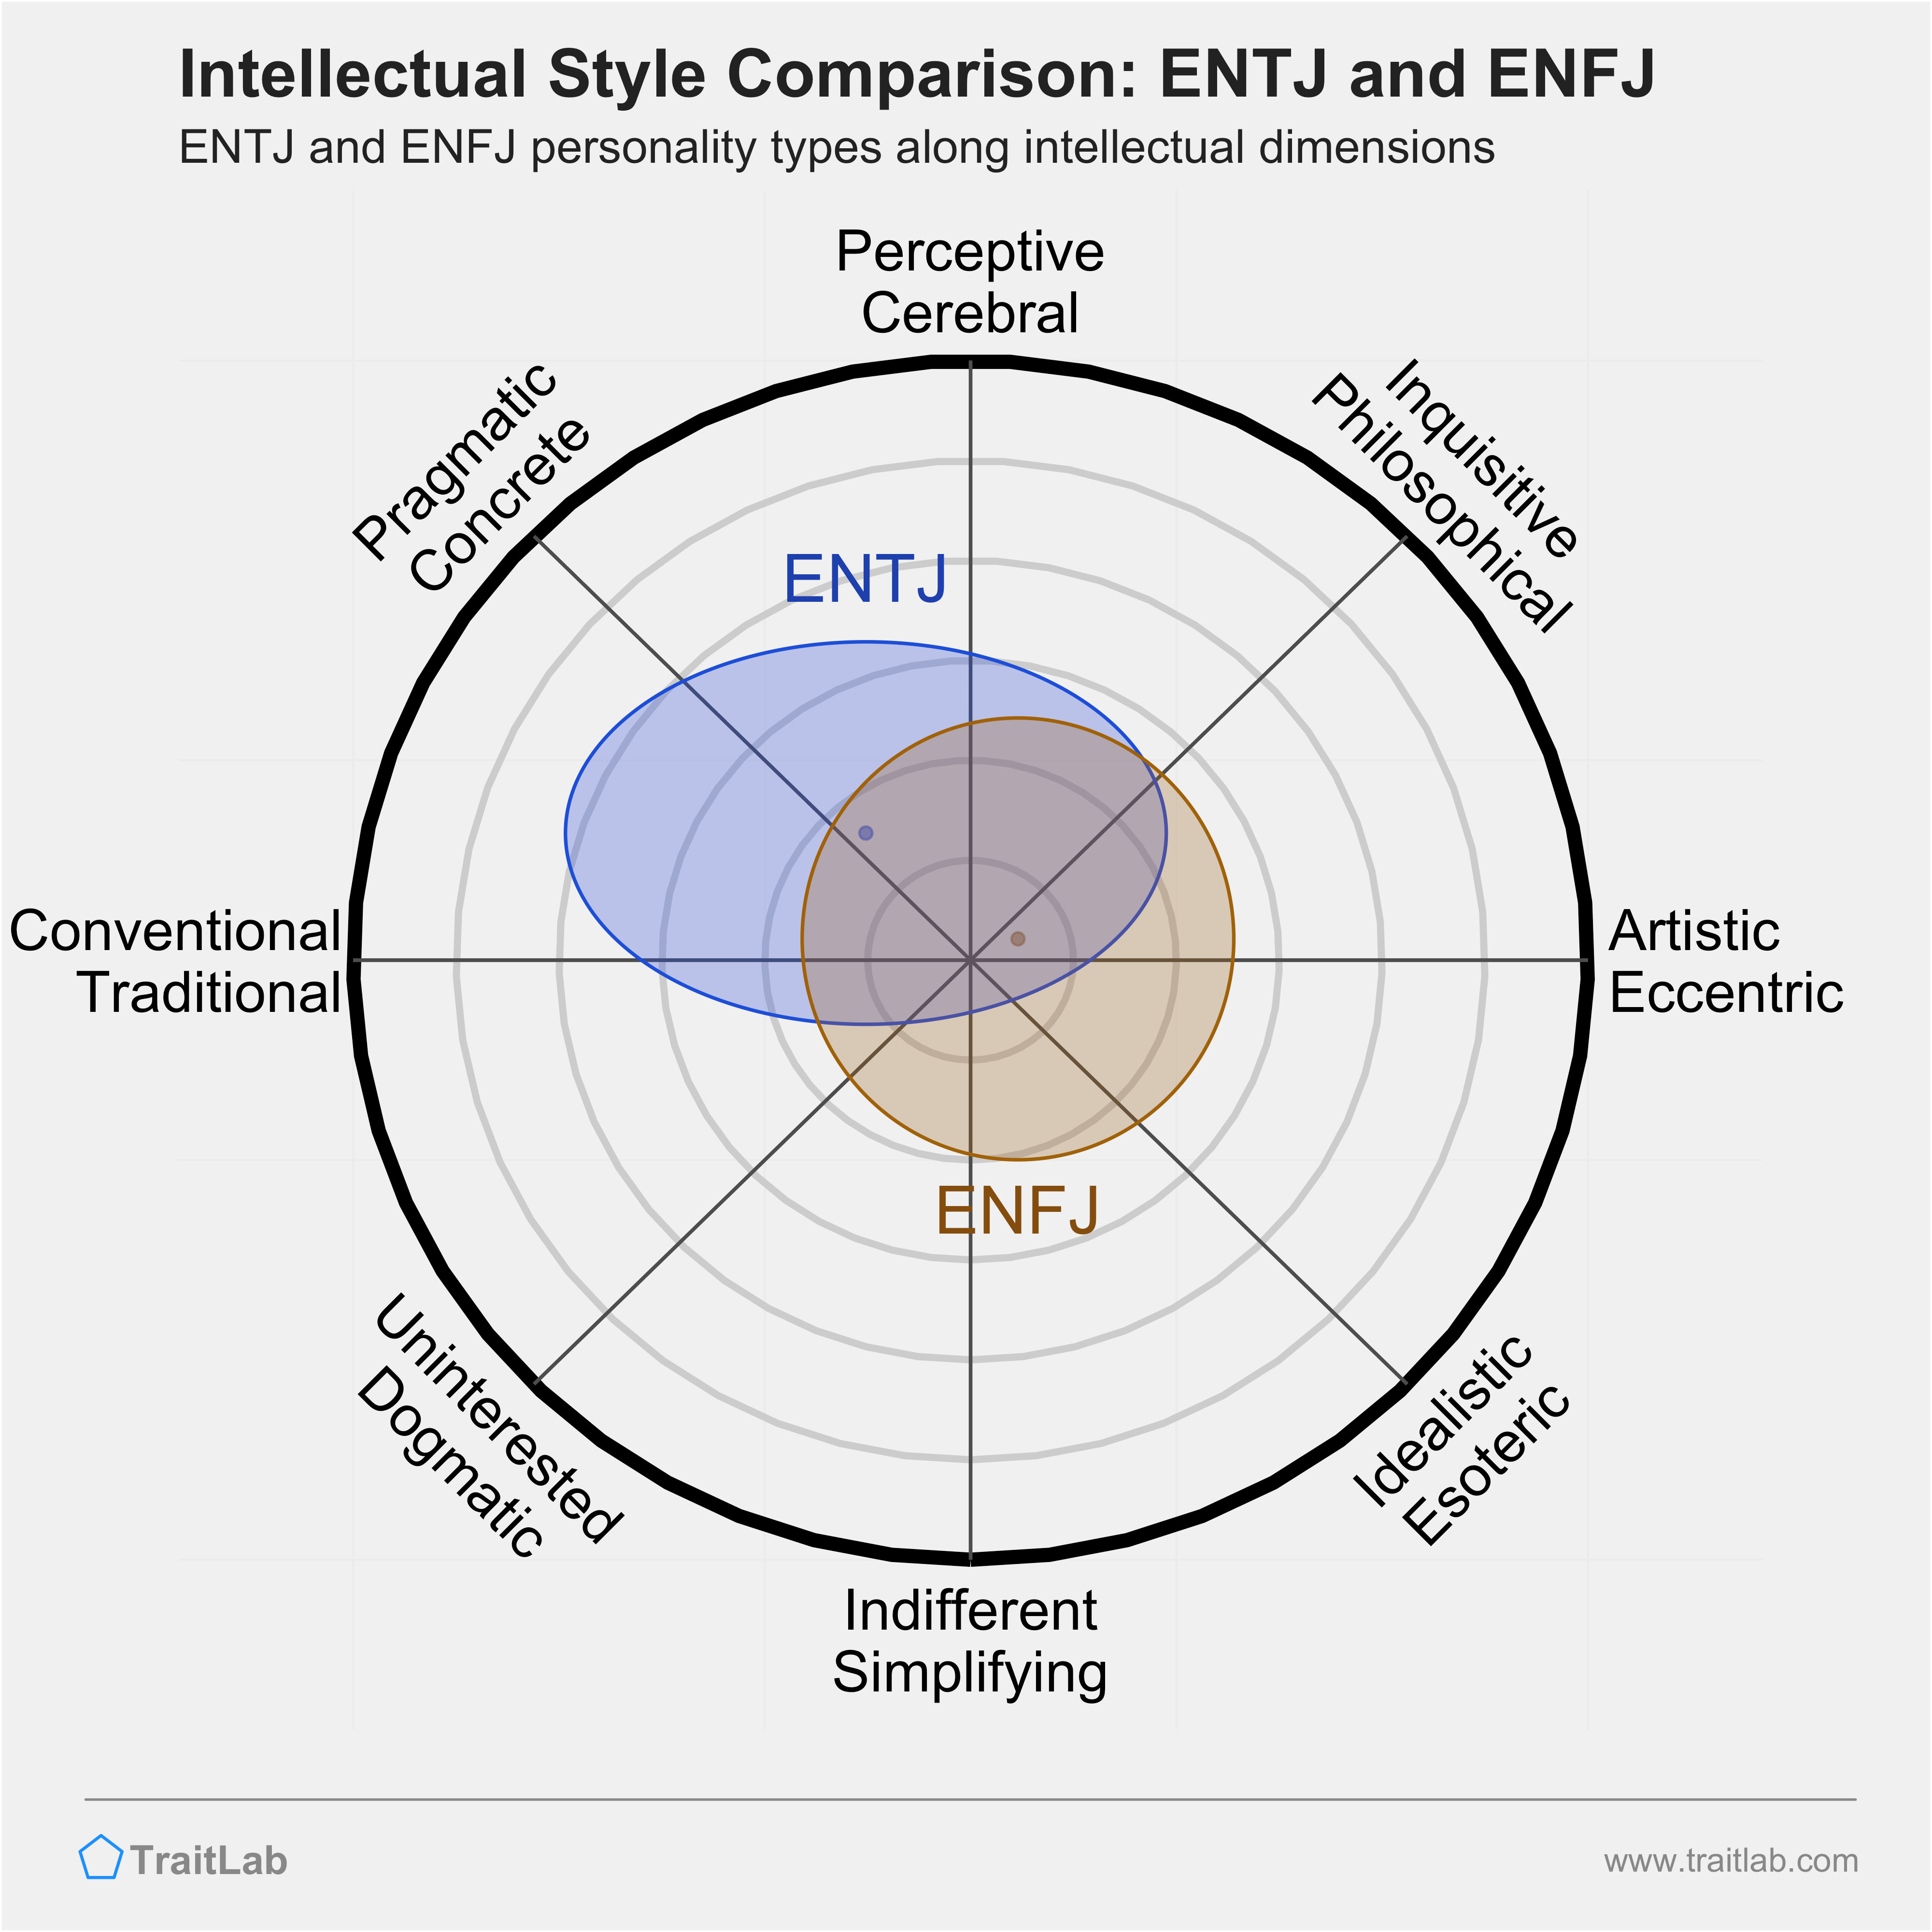 ENTJ and ENFJ comparison across intellectual dimensions